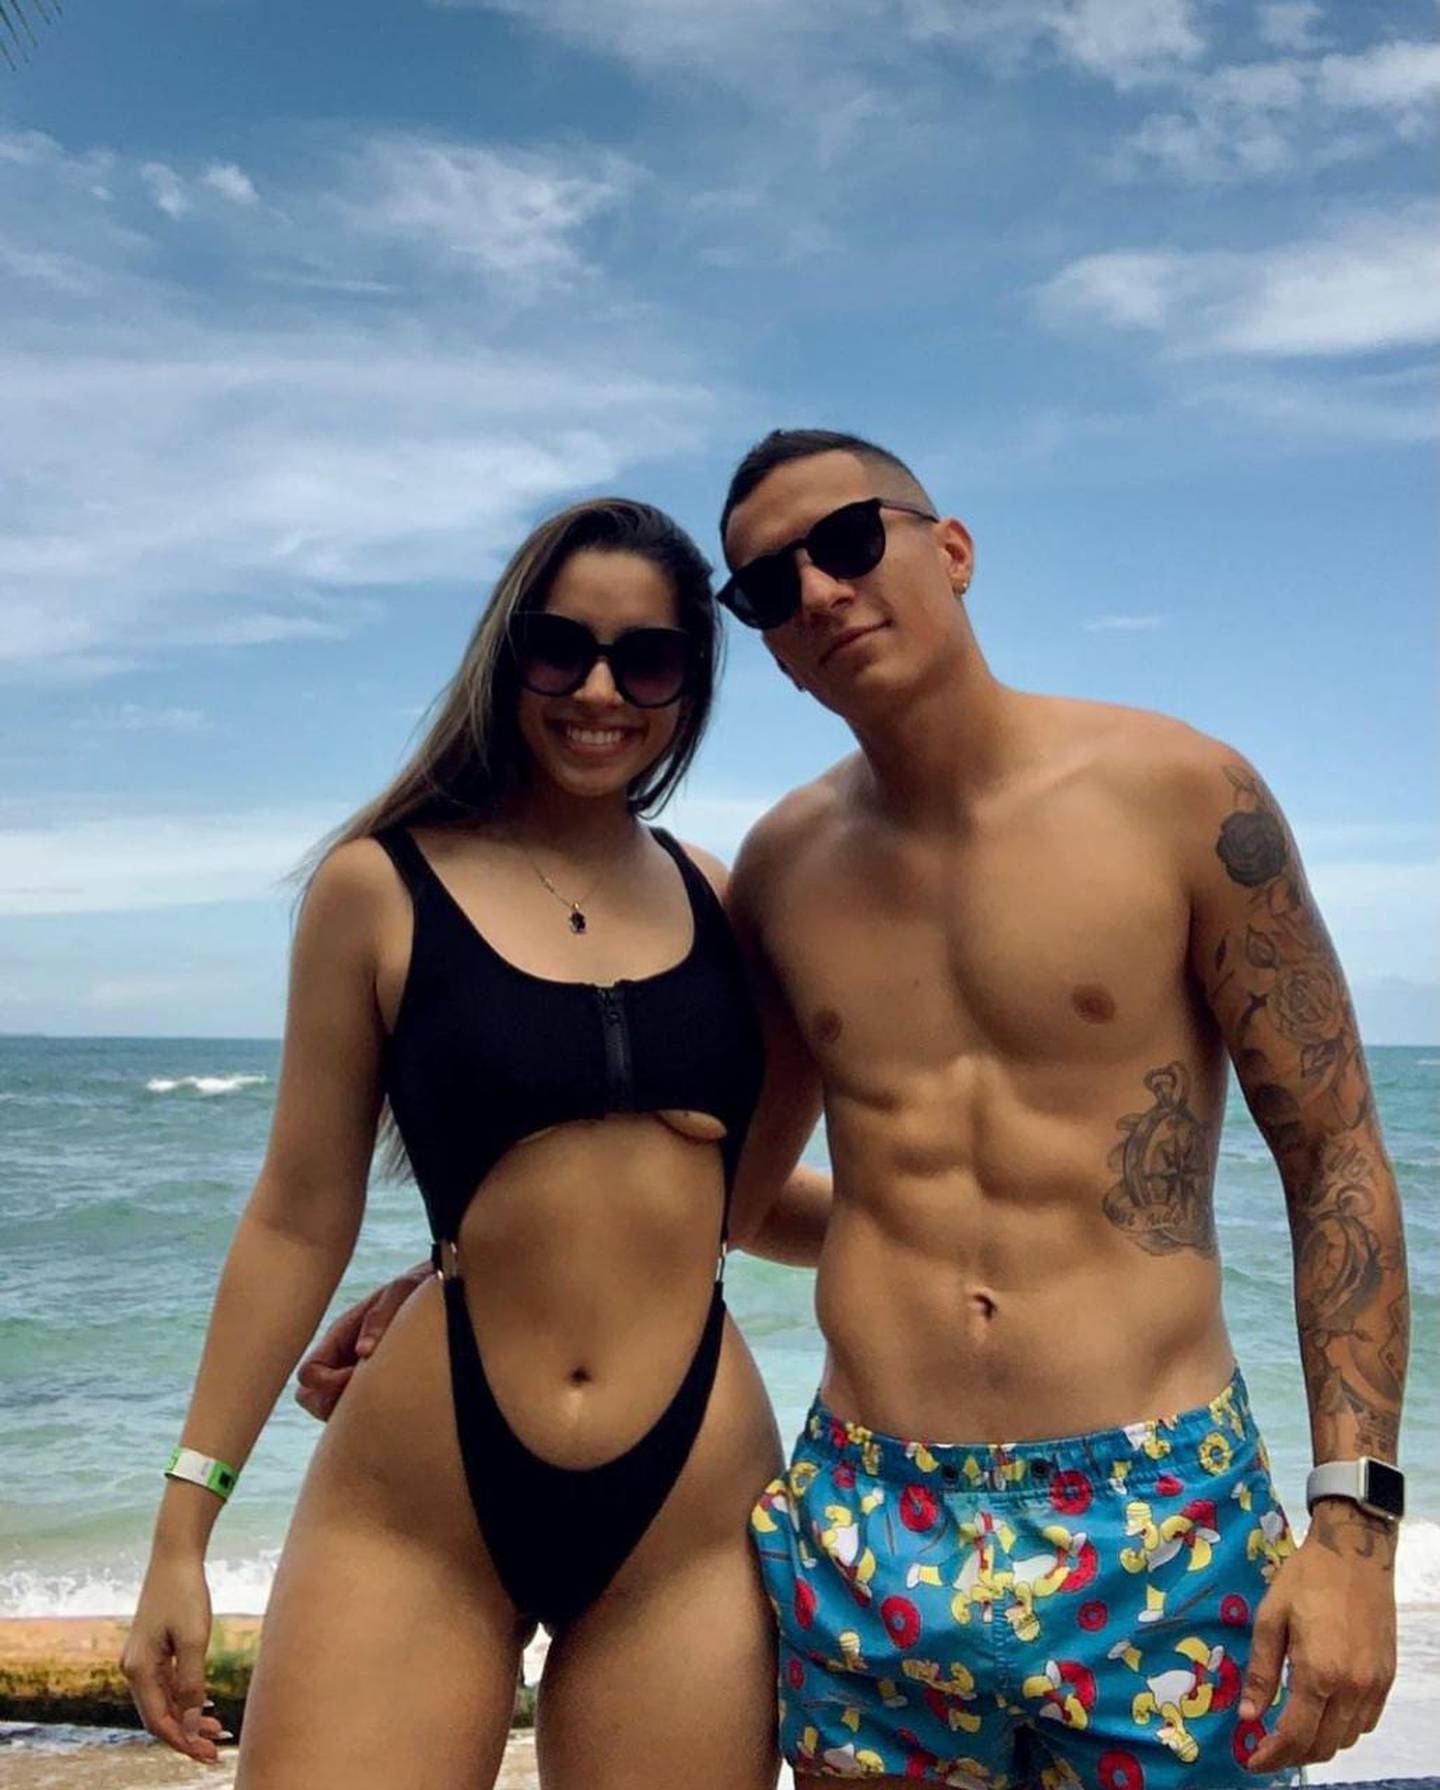 El futbolista llevó a su novia Alexa Montes con los ojos vendados para sorprenderla. Foto: Instagram